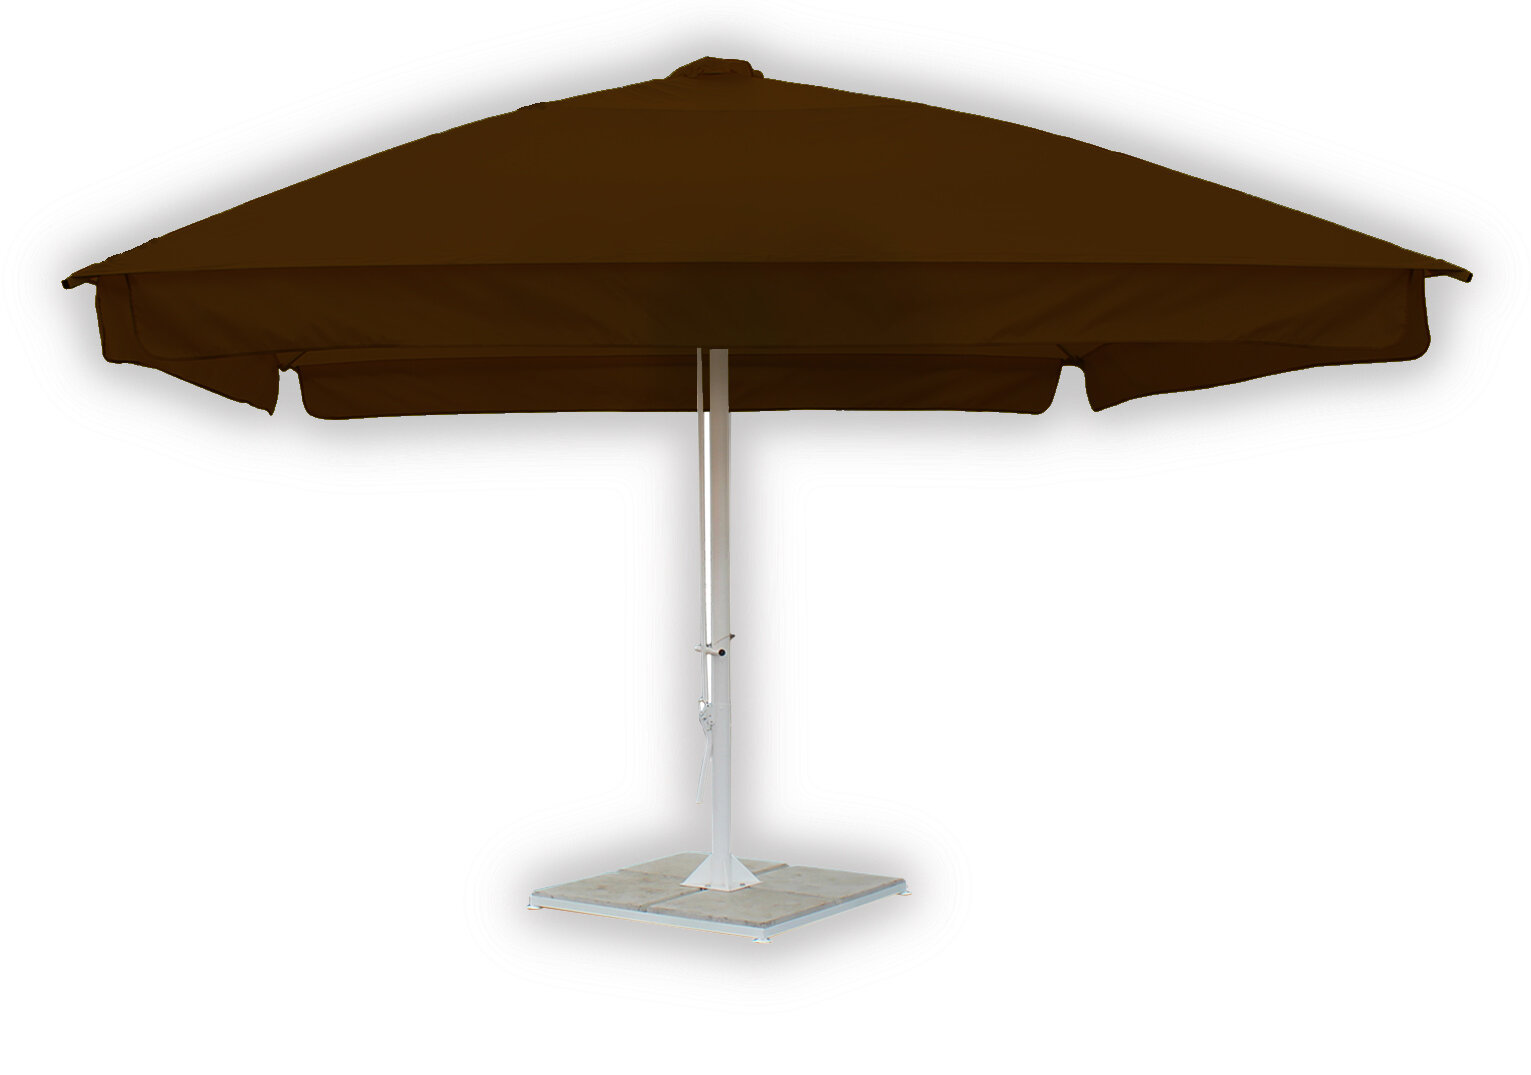 Зонт для кафе квадратный 2,5х2,5 метра